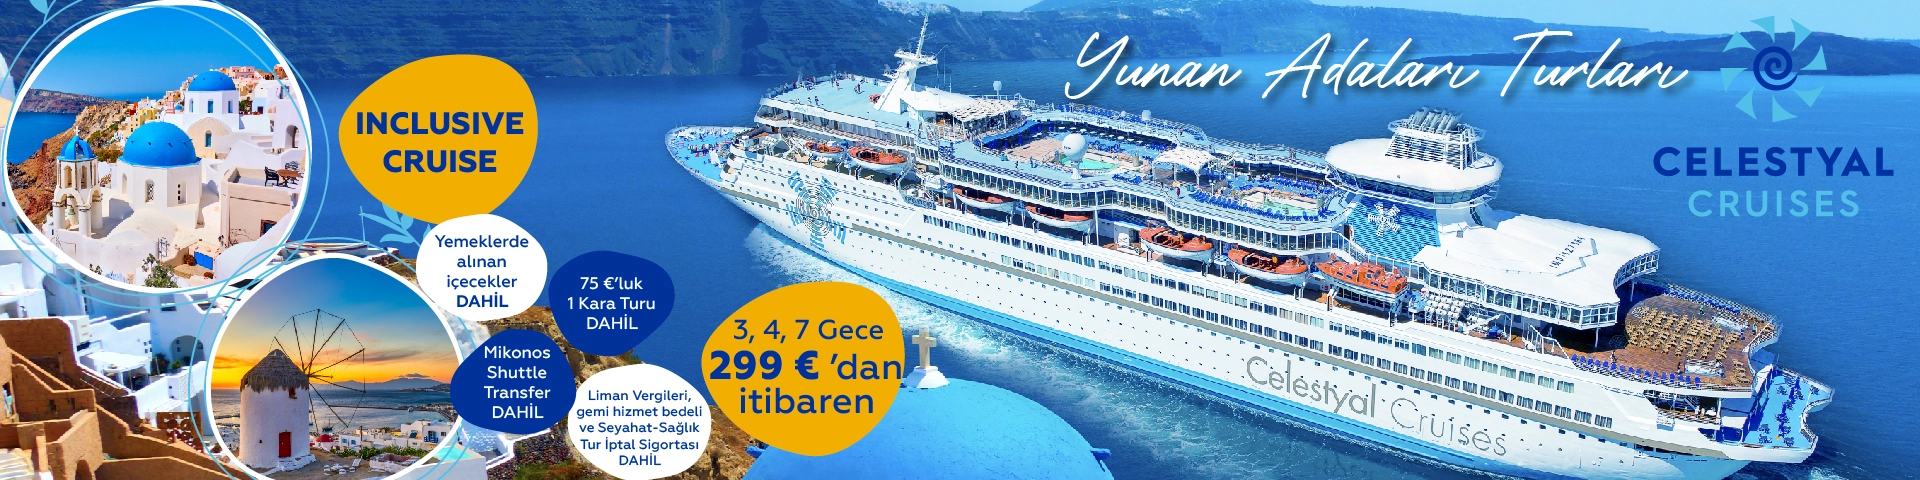 Celestyal Cruises ile Yunan Adaları